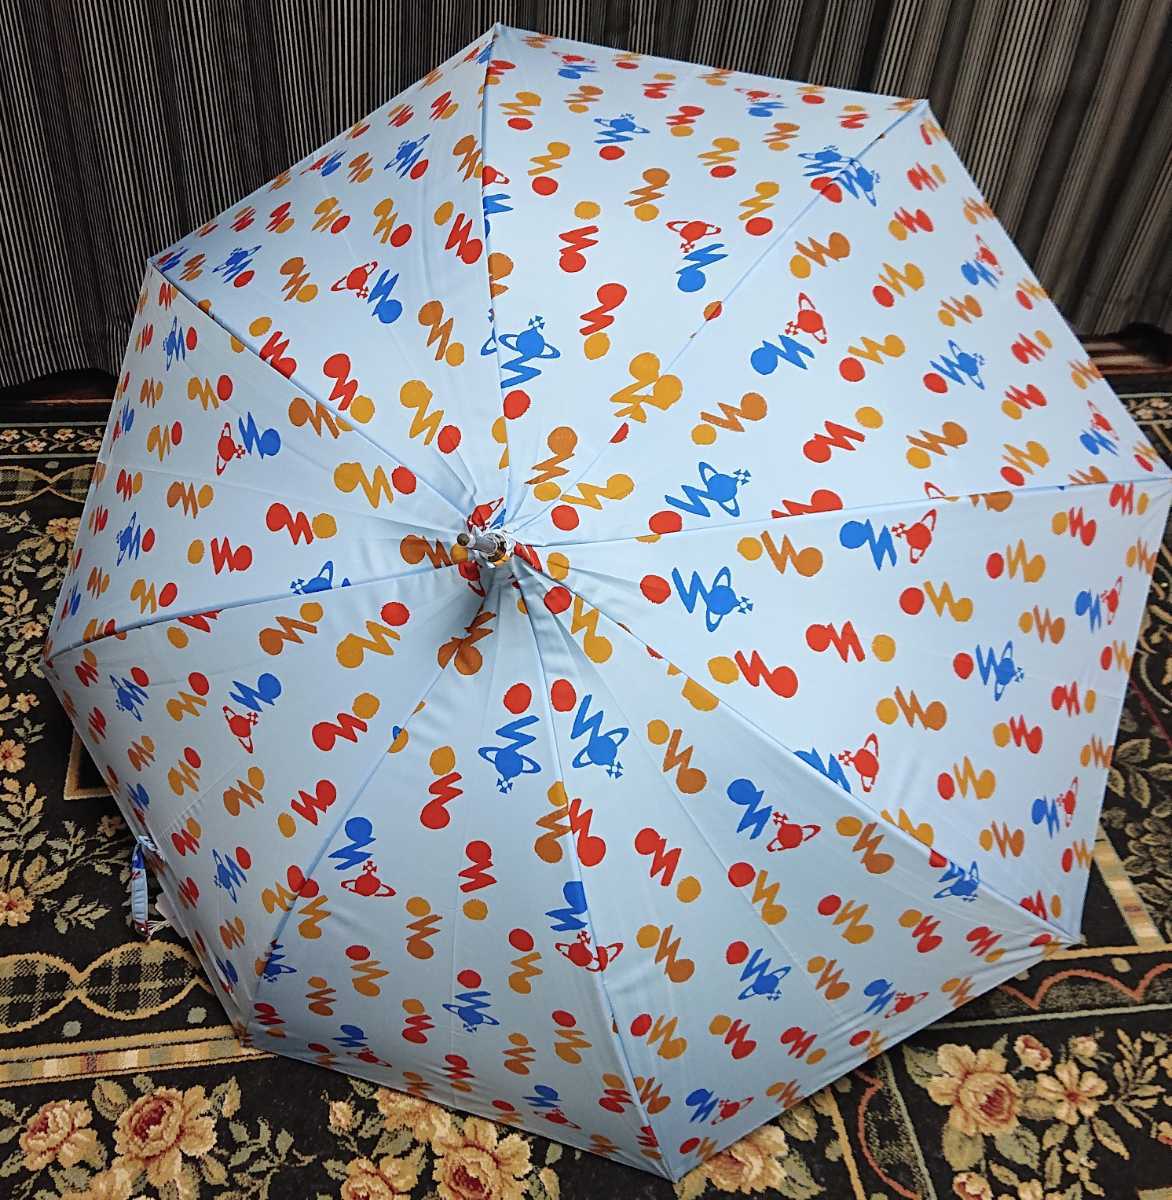 Vivienne Westwood ACCESSORIES ORB болт длинный зонт зонт зонт от дождя o-b болт бледно-голубой новый товар не использовался голубой Vivienne Westwood 